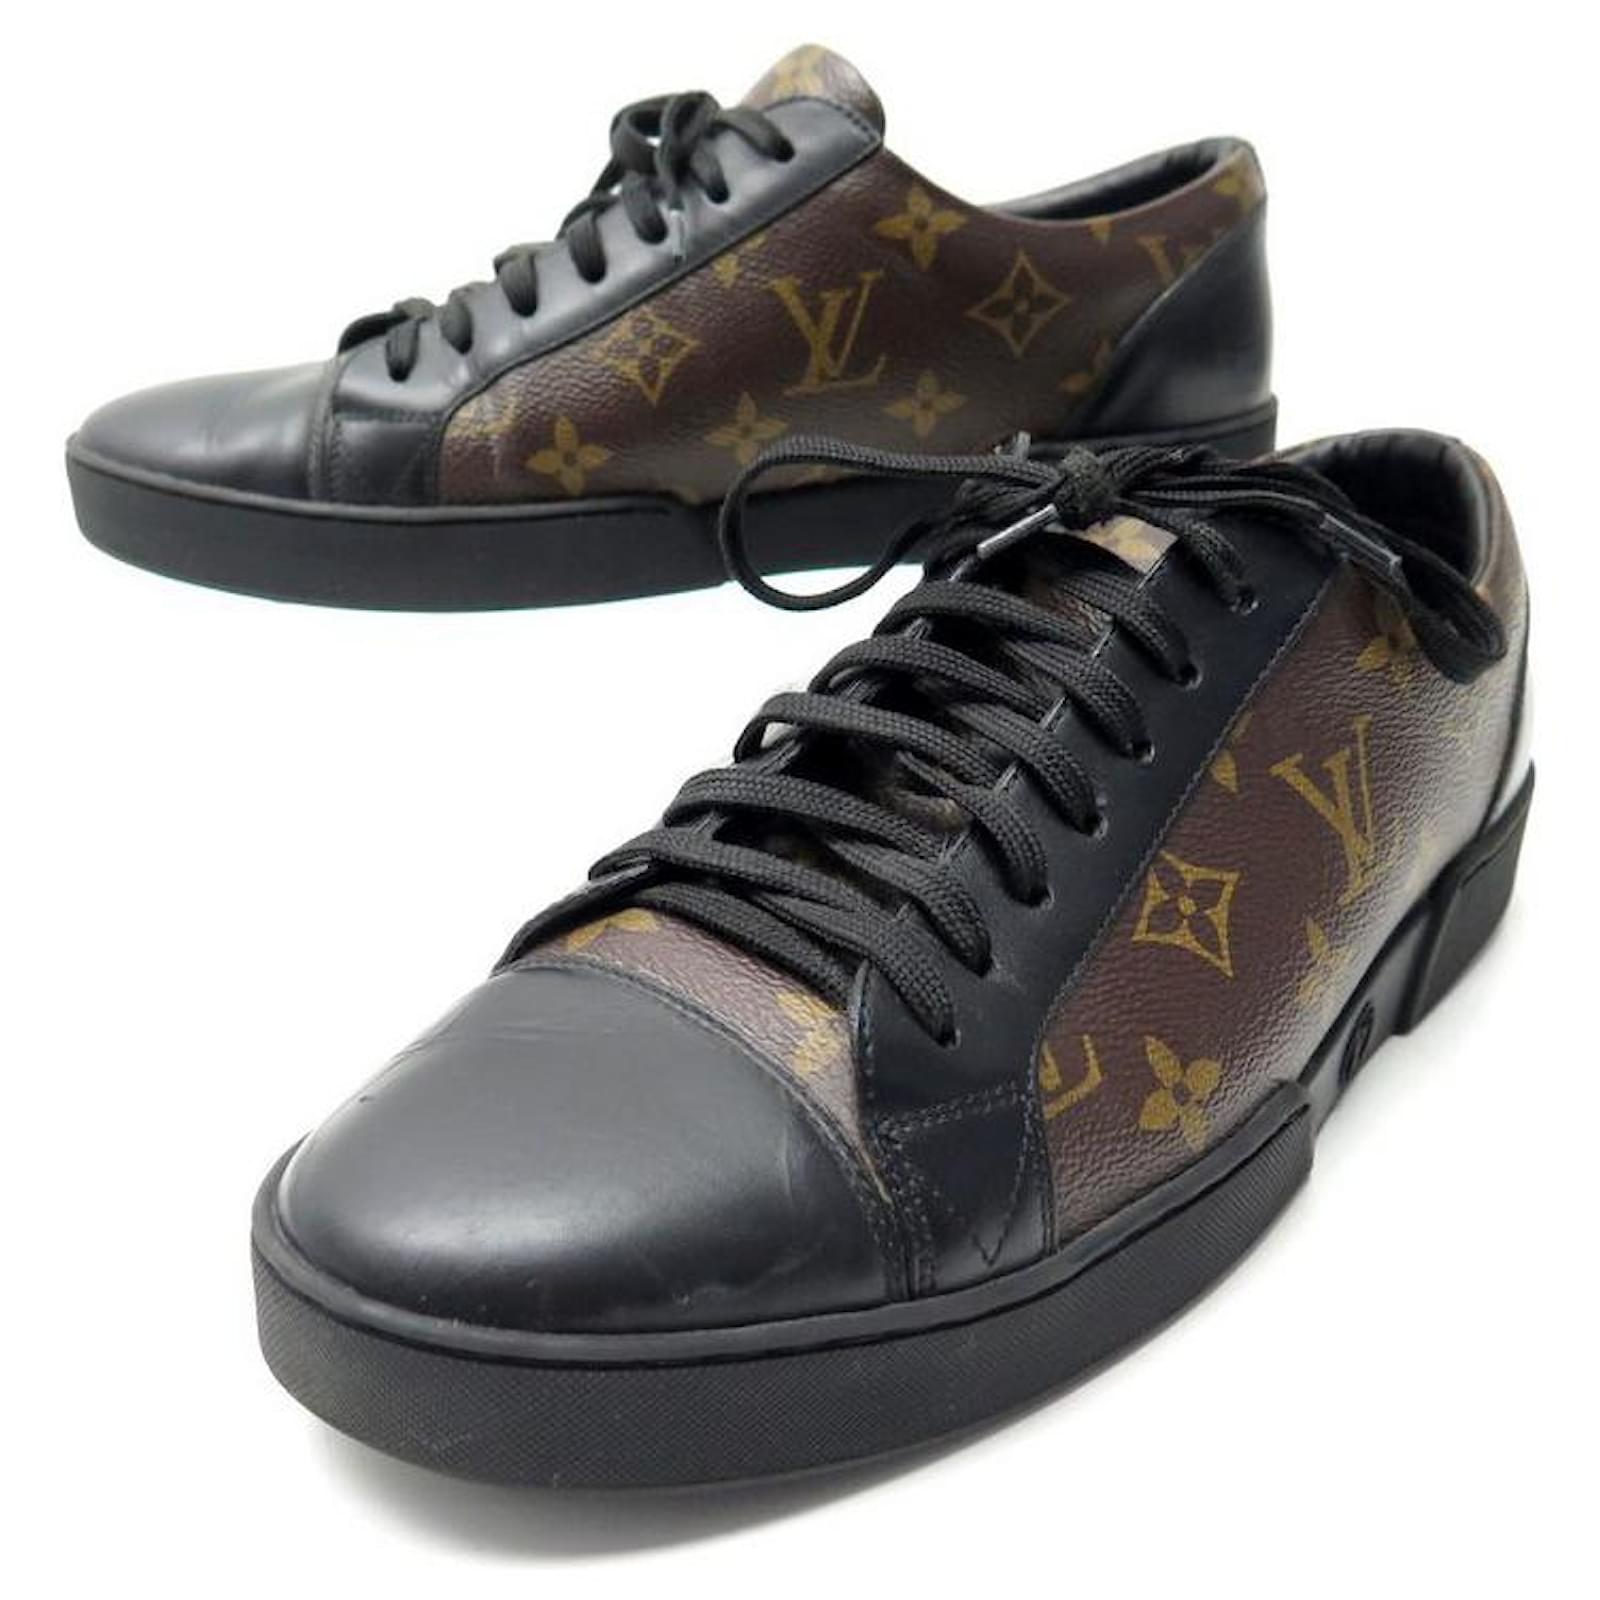 Louis Vuitton Sneakers aus Segeltuch - Braun - Größe 38 - 20027345